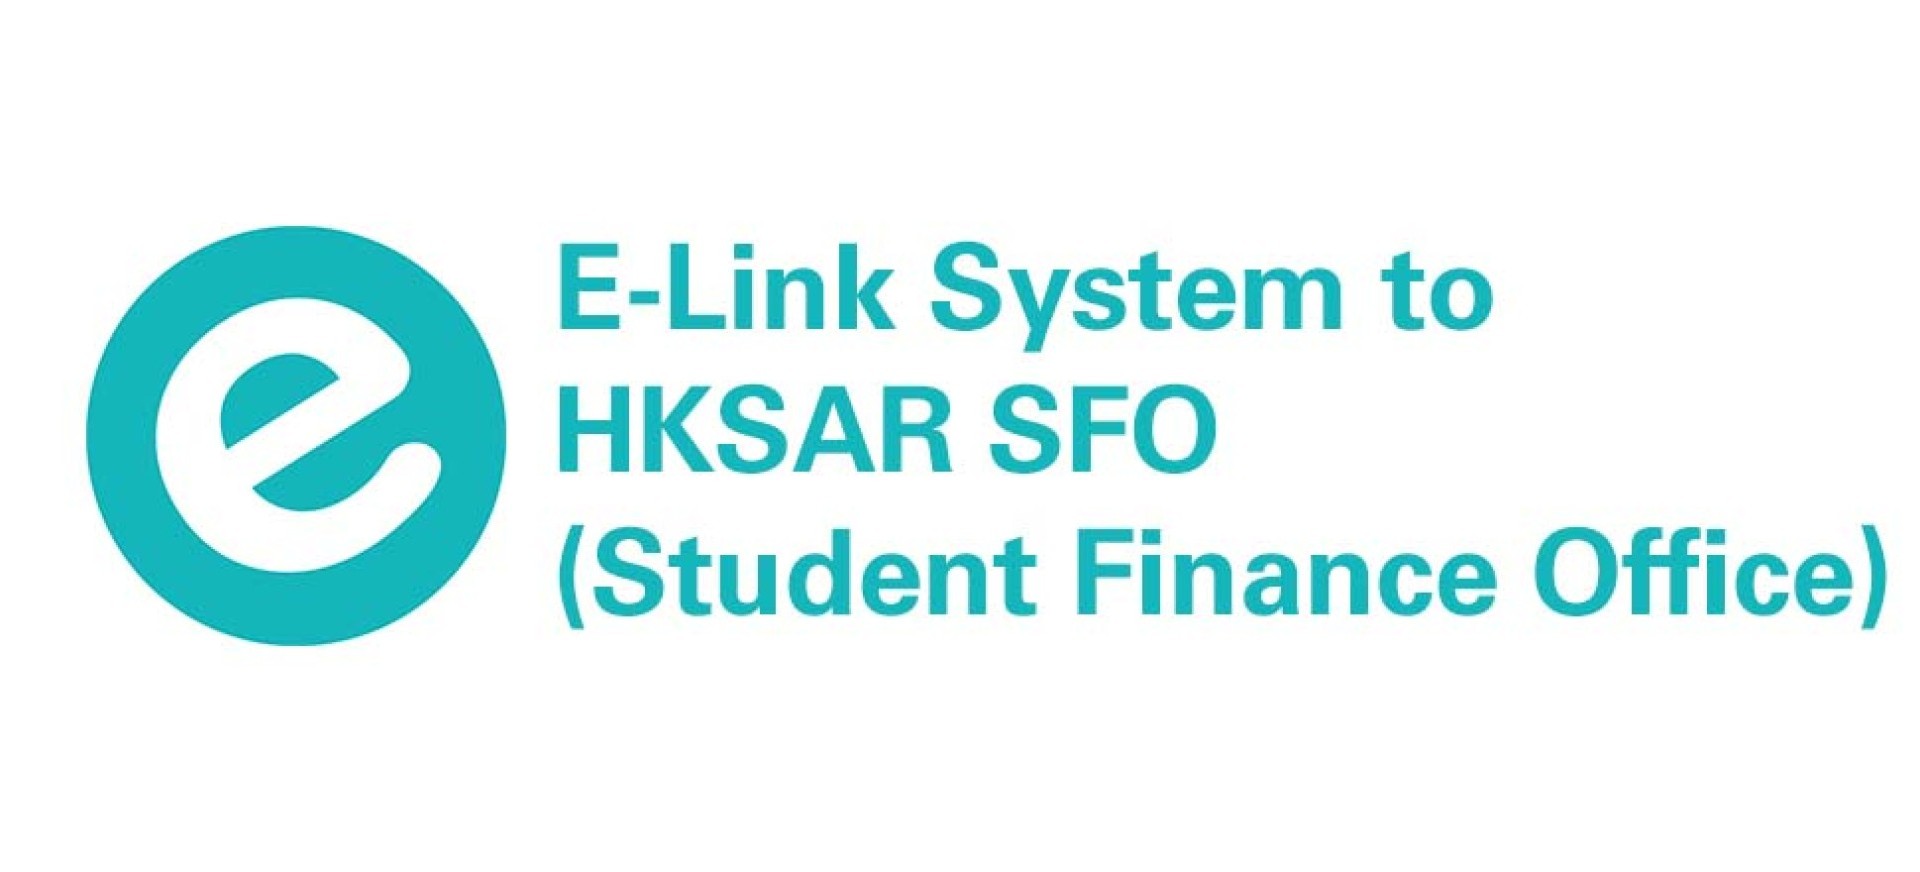 SFO E-Link System